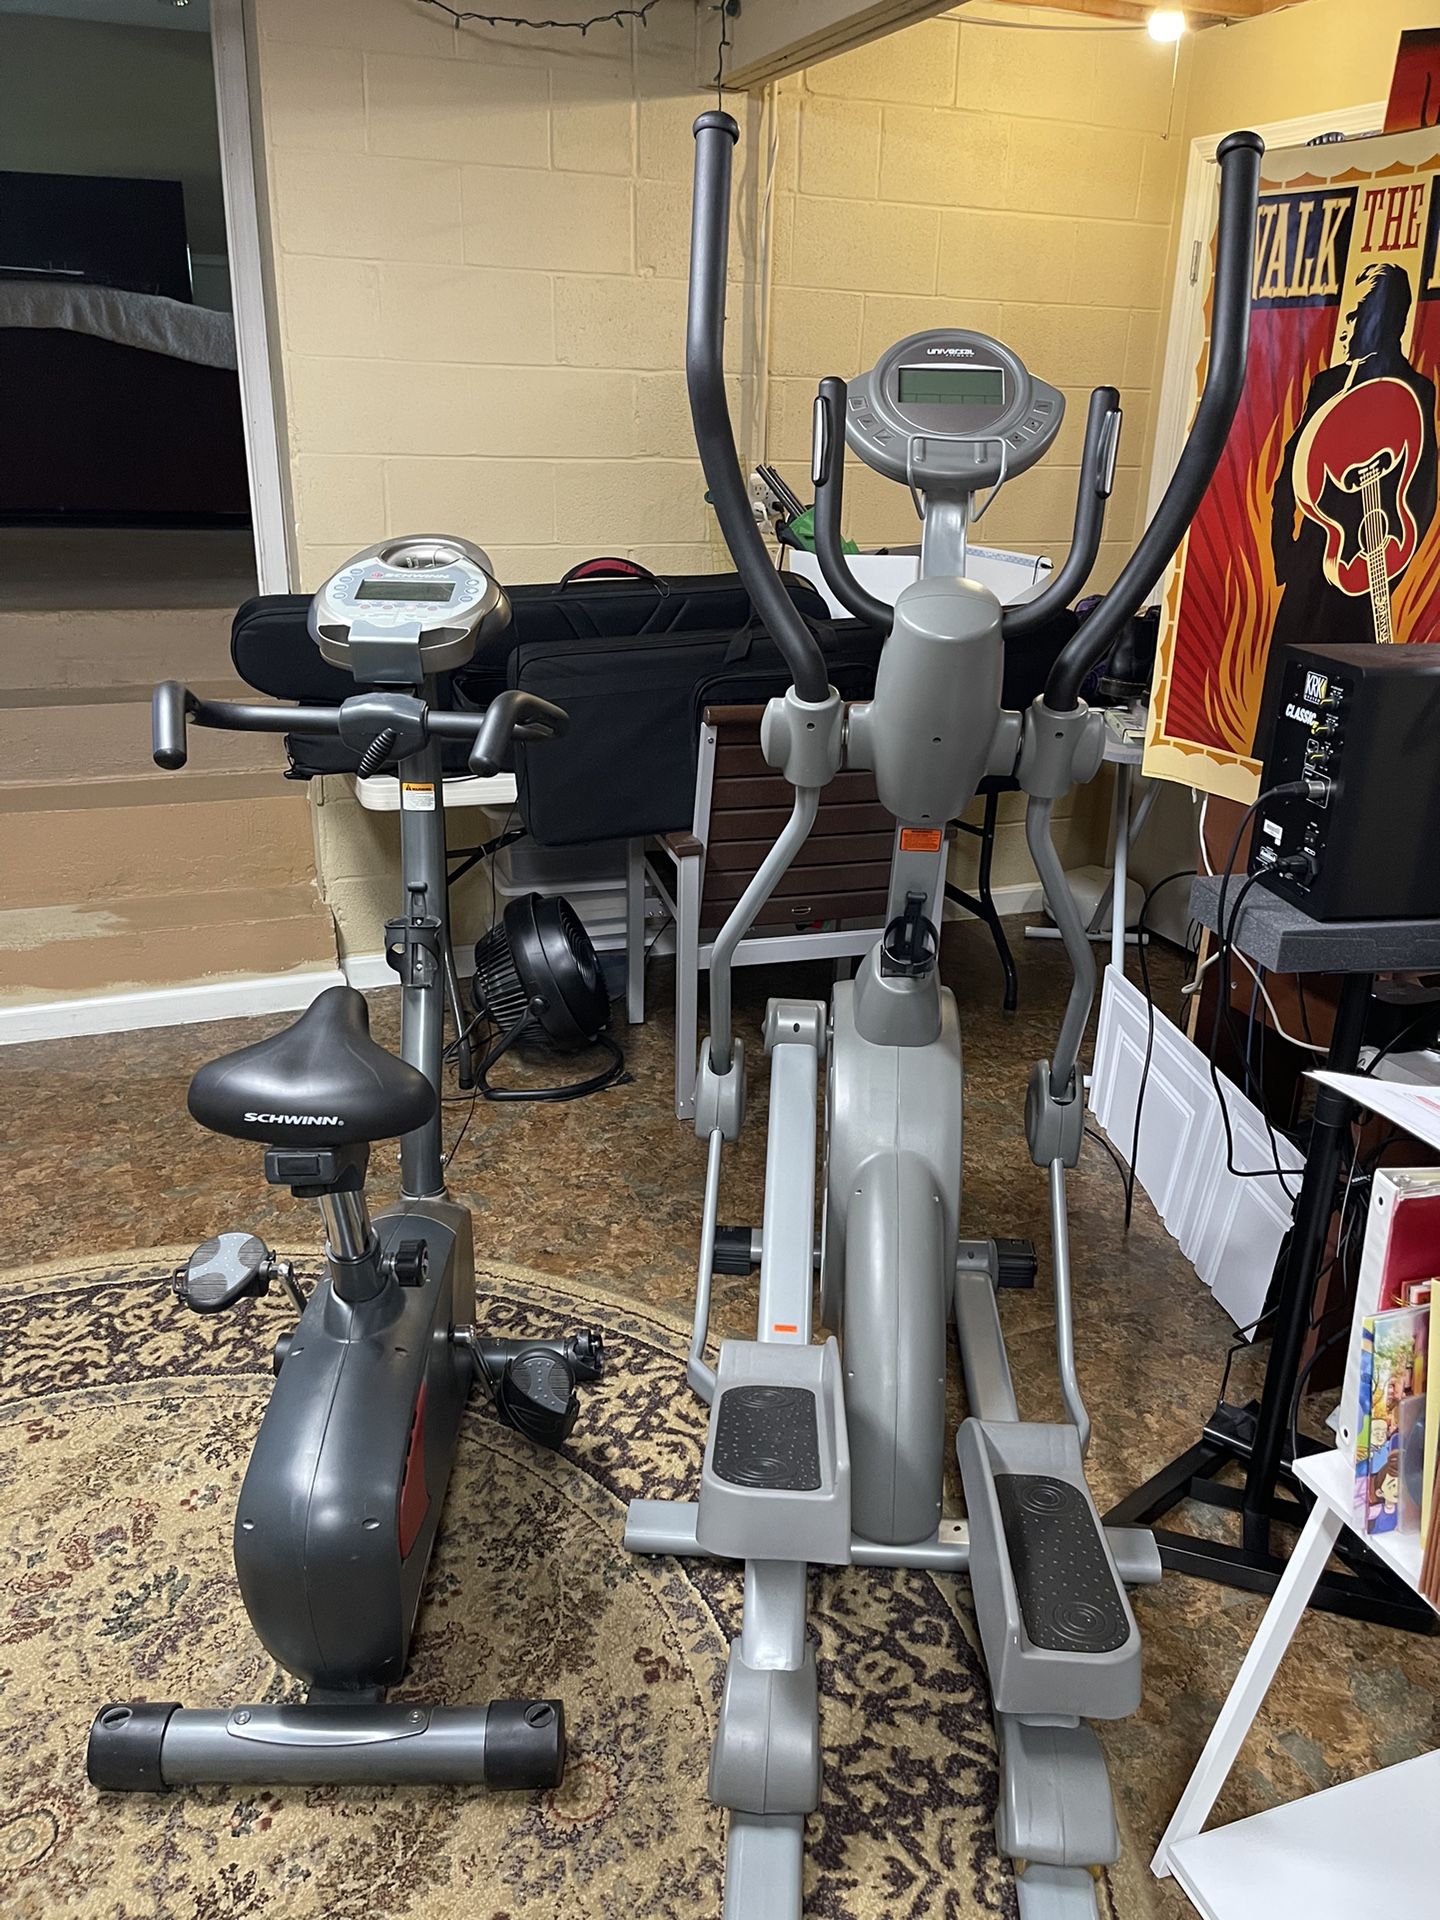 Bike AND Elliptical Machine -  Both - Exercise Equipment - 1 Schwinn Upright Bike And 1 Universal Elliptical Fitness  Machine